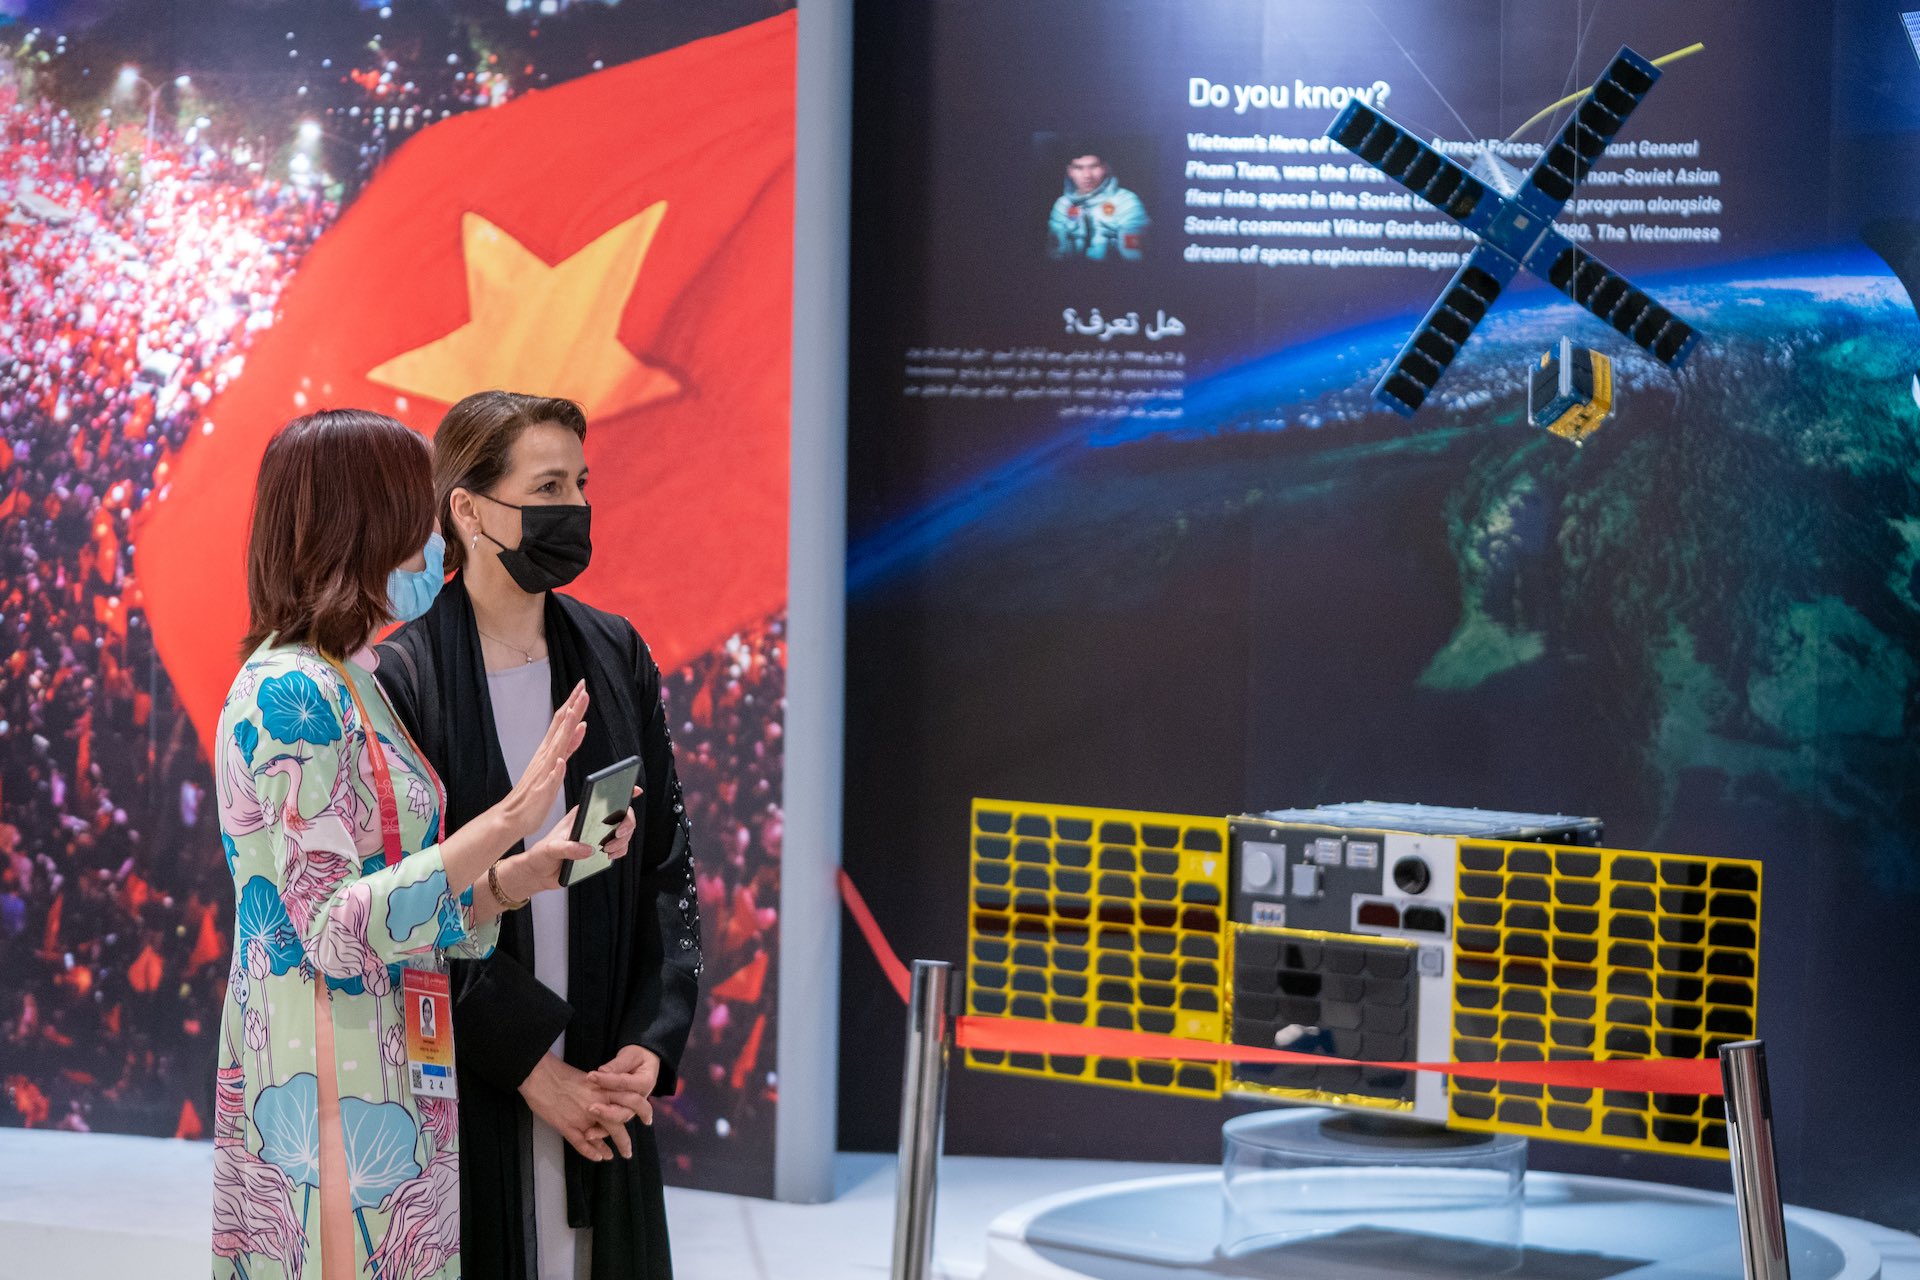 Climate Change and Environment Minister tours Vietnam Pavilion Expo 2020 Dubai